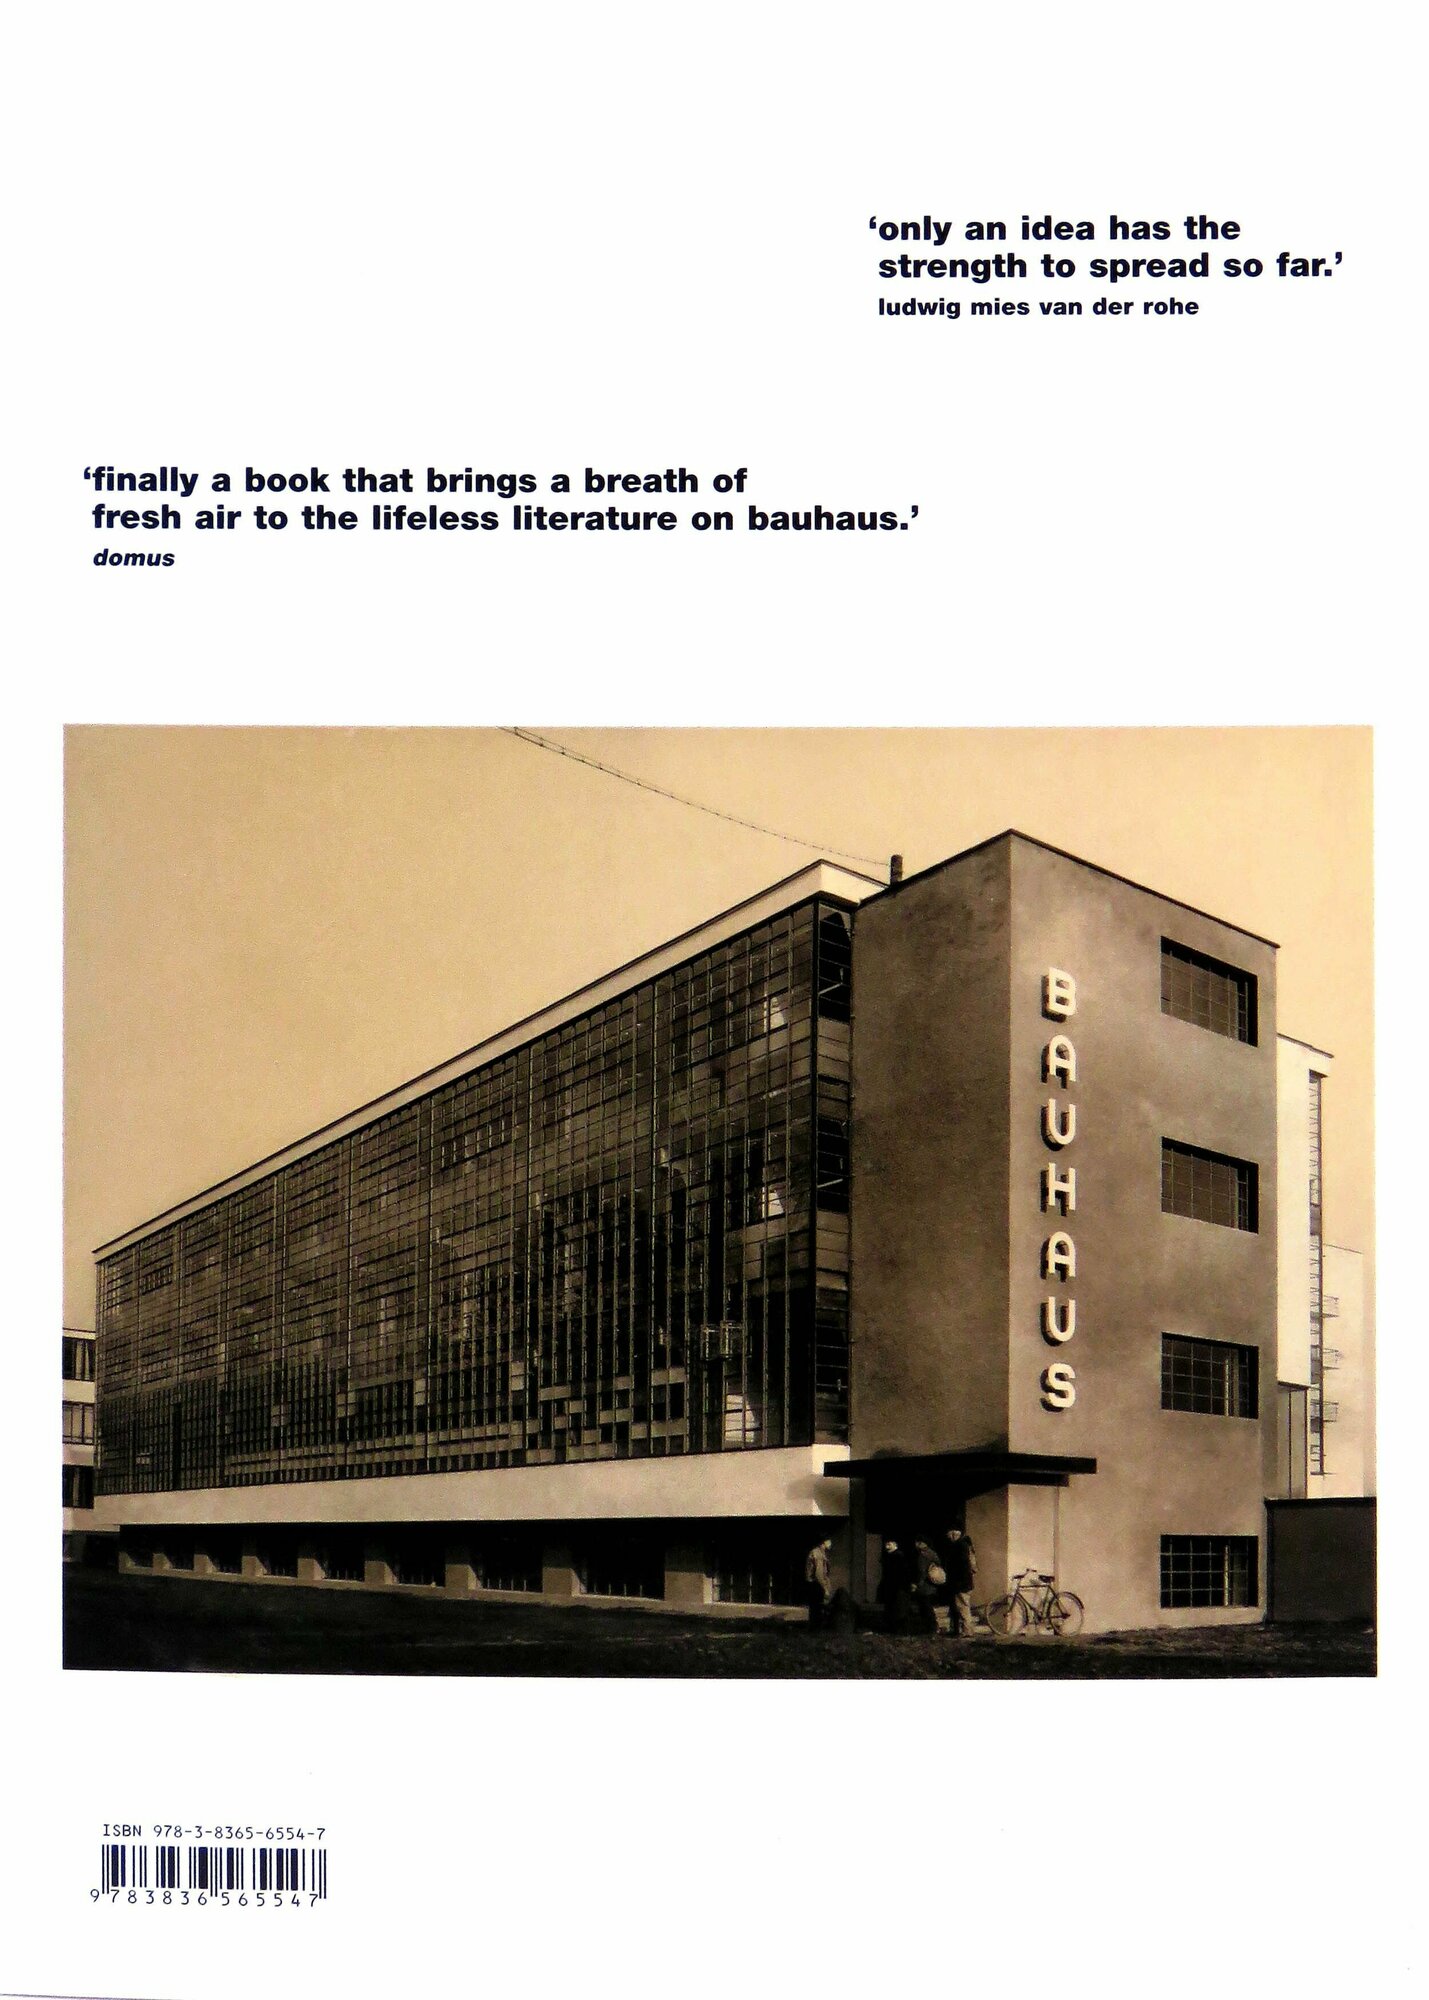 Bauhaus (Дросте Магдалена) - фото №4